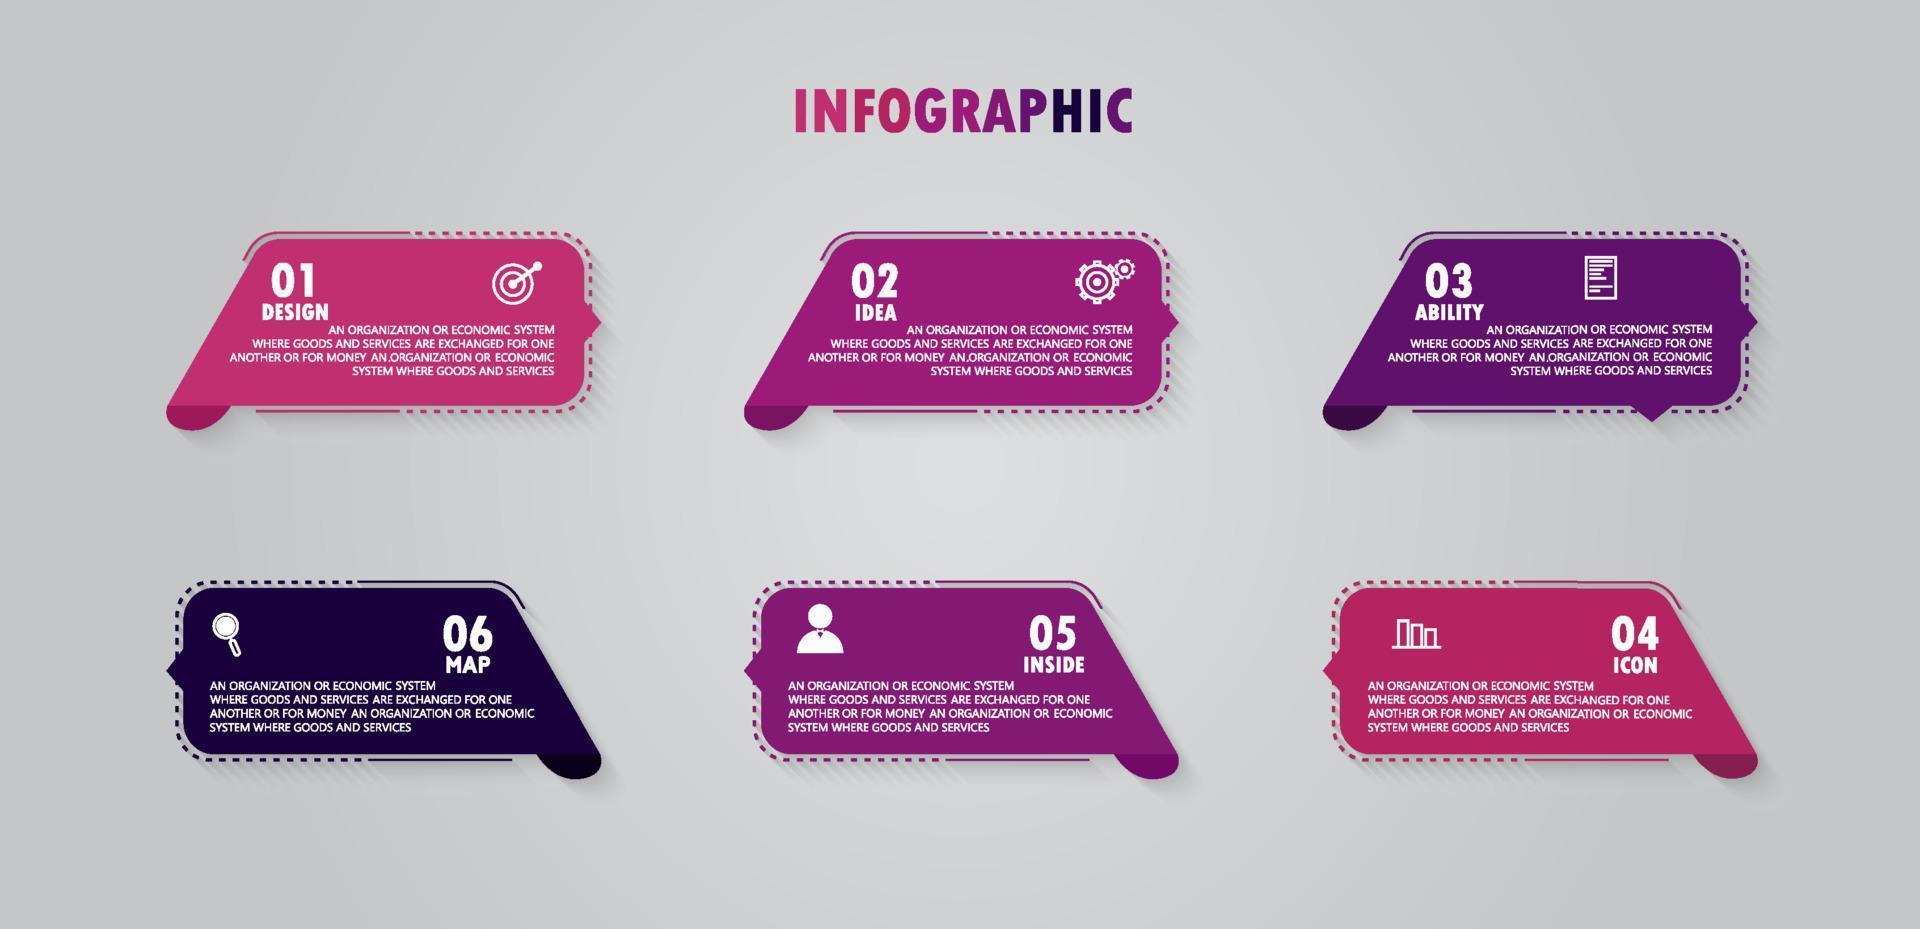 vector infographic labelsjabloon met pictogram opties of stappen infographics voor zakelijke ideeën presentaties het kan worden gebruikt voor informatie graphics, presentaties, websites, banners, gedrukte media.